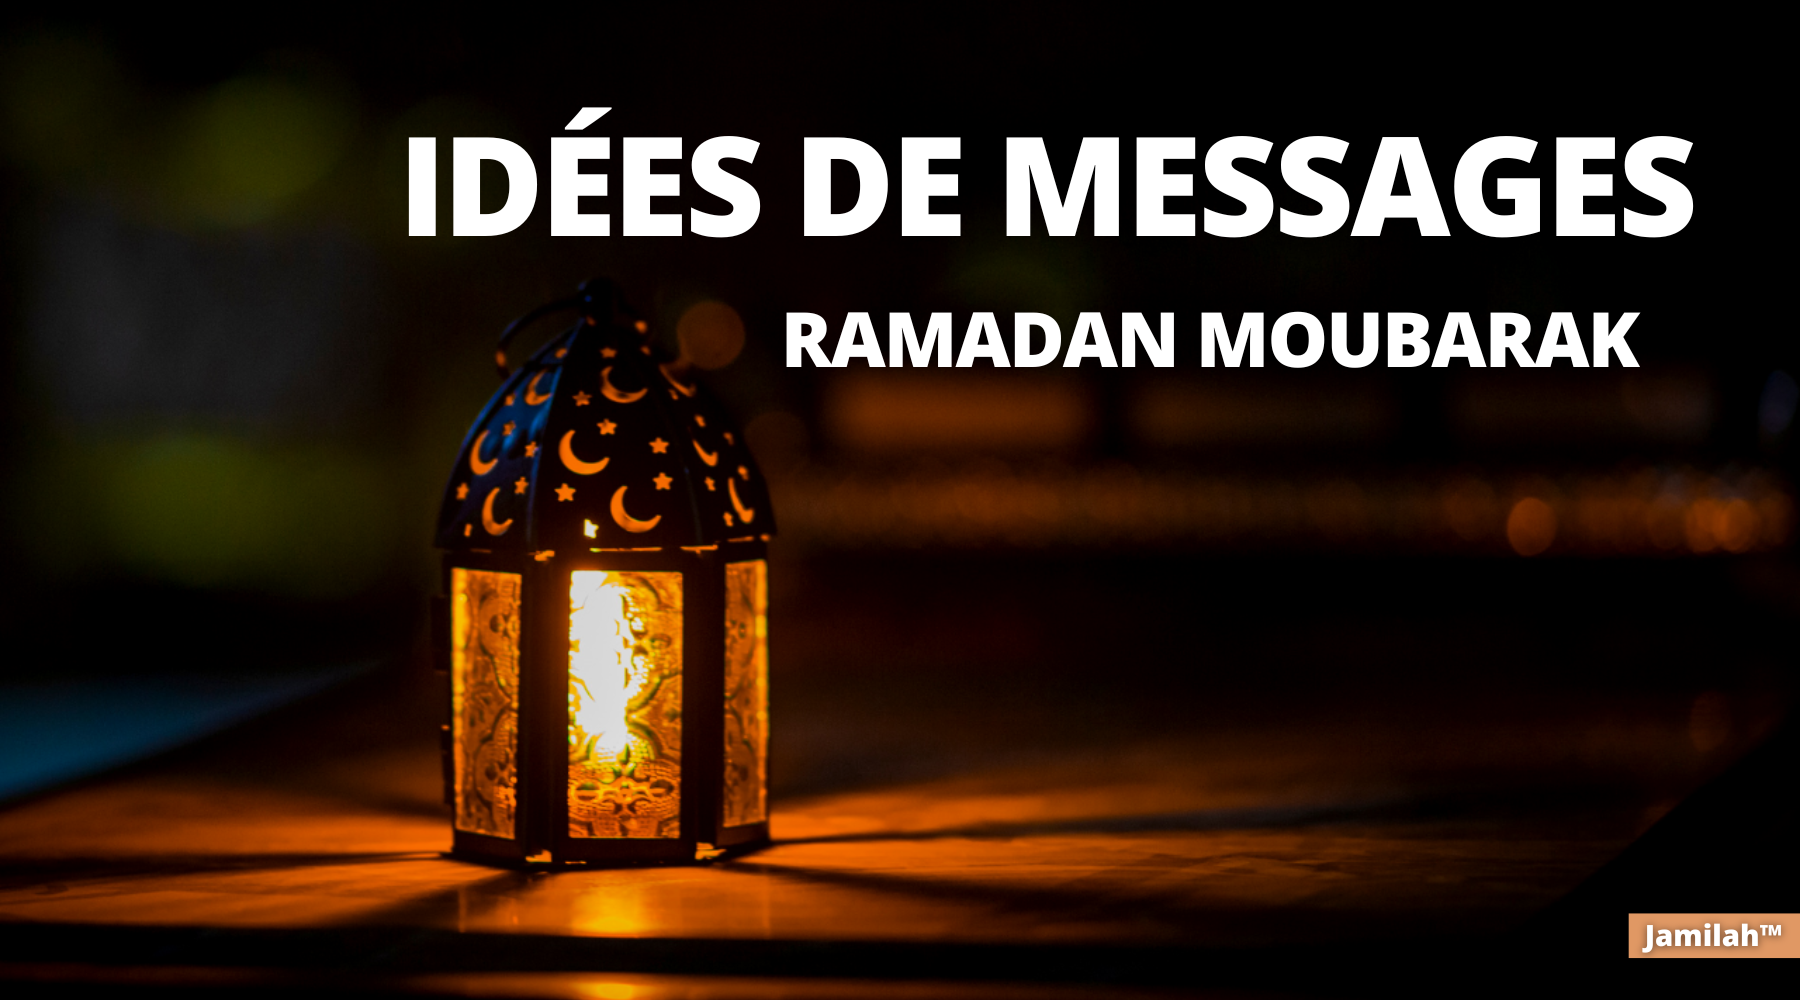 Idées de messages pour souhaiter un bon ramadan